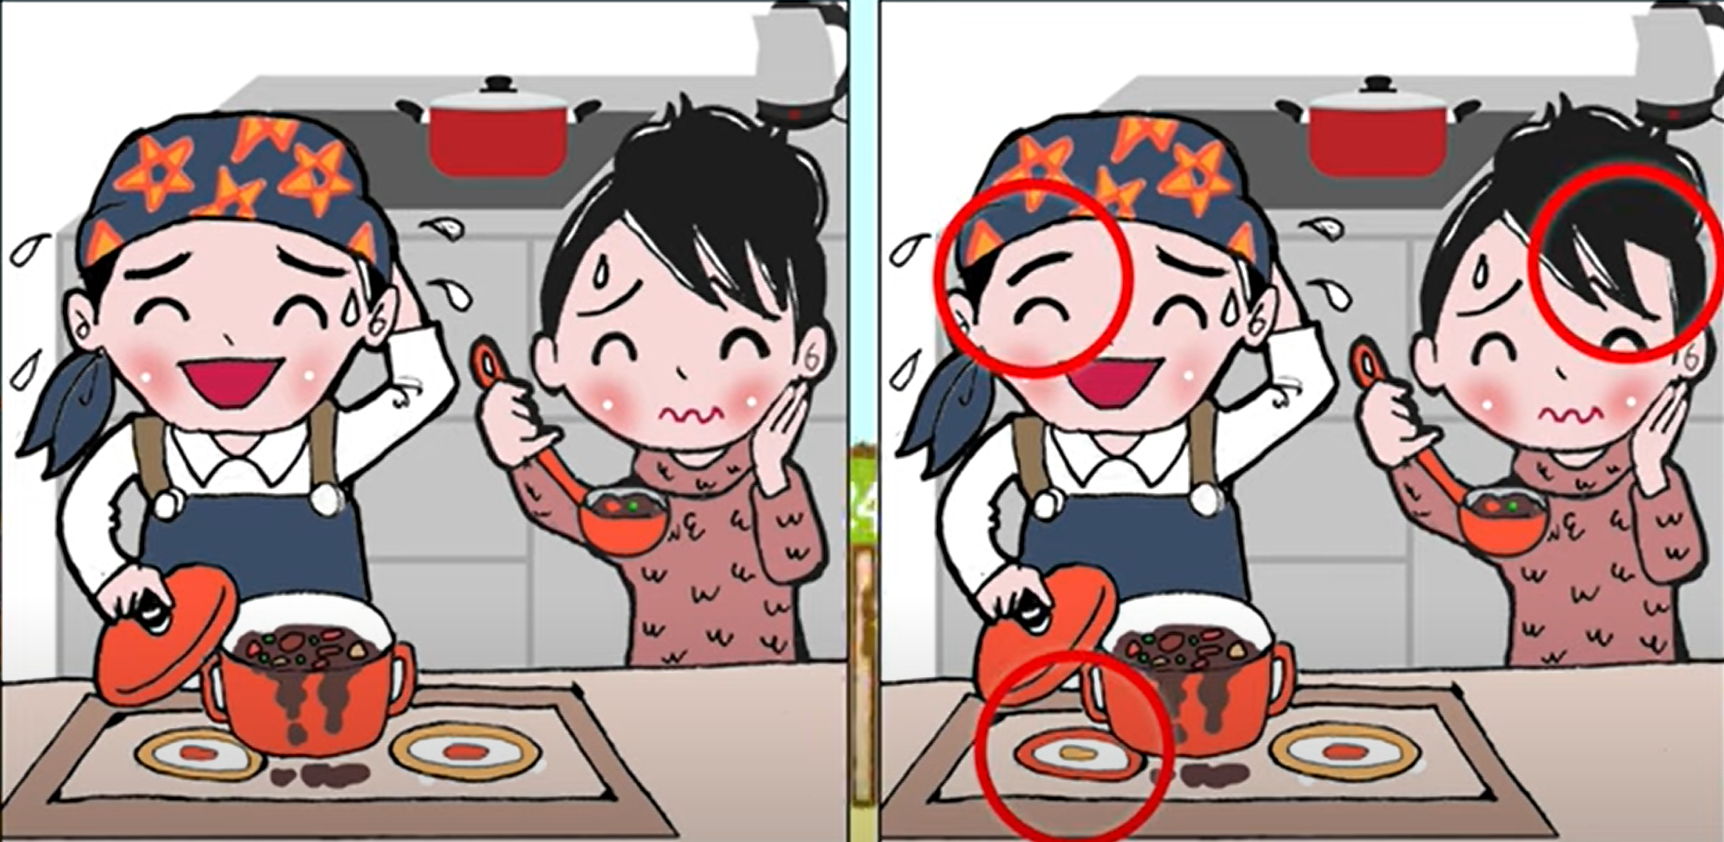 Jawaban tes IQ dalam menemuaknperbedaan pada pasangan yang sedang memasak di gambar.